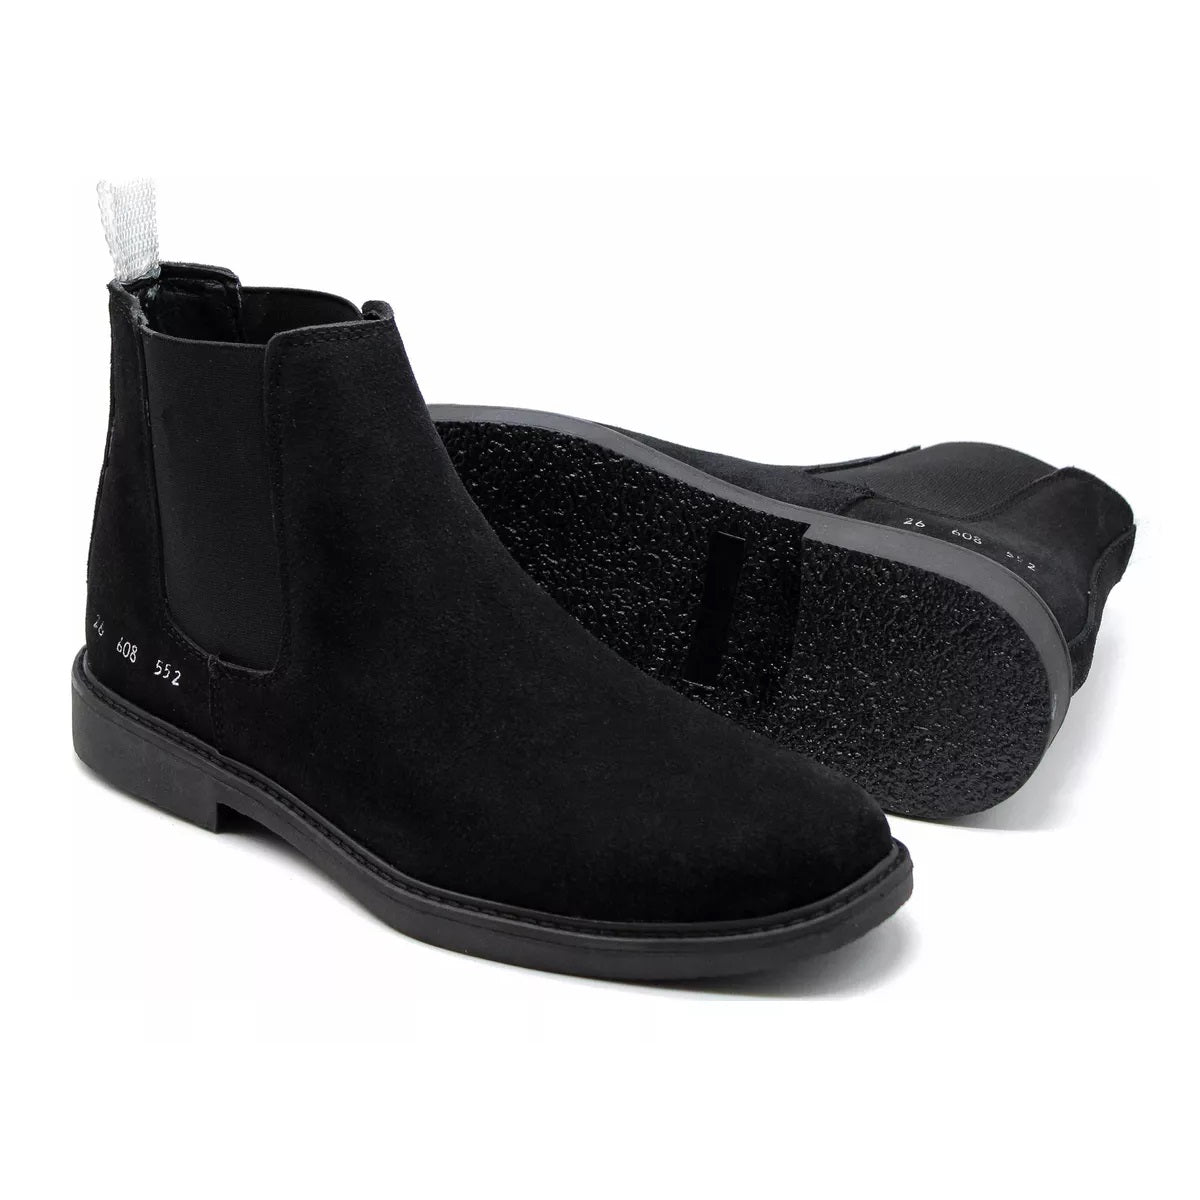 Zapatos Minimalistas - Mujer - Piel Natural - Negro - El Nuevo Derby –  Origo Shoes